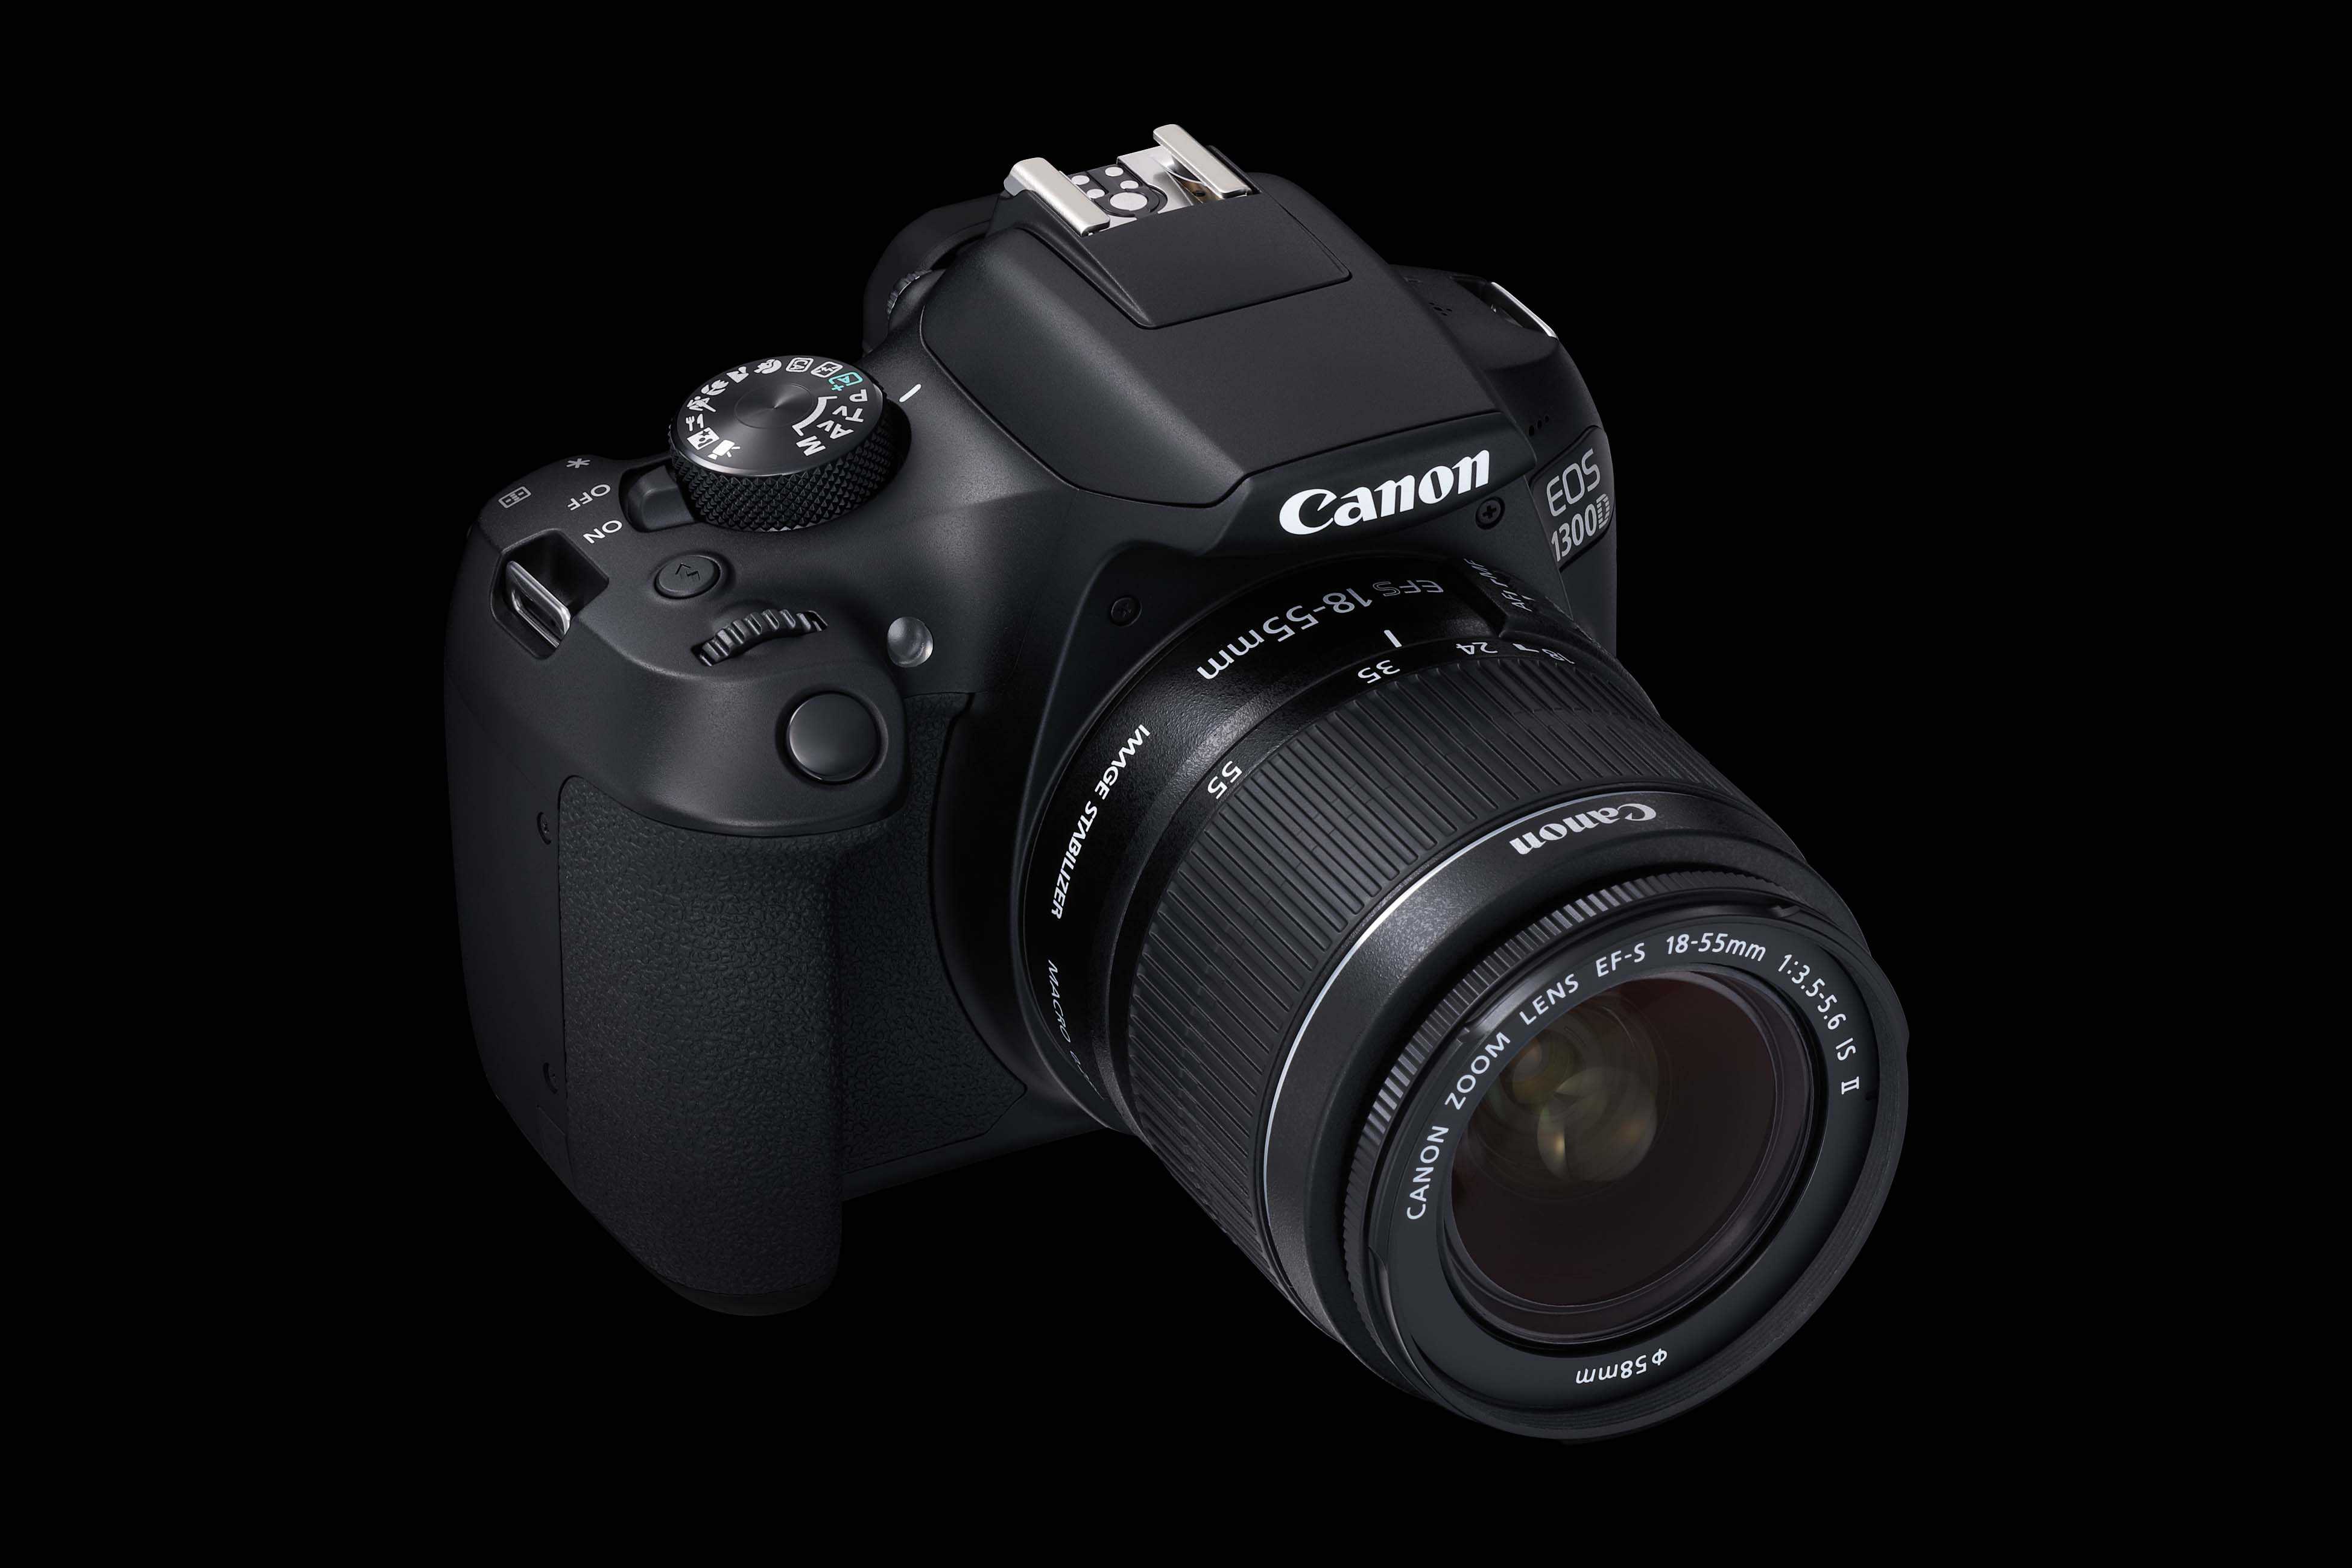 Canon EOS 20D   Modellpflege an der Basis   d pixx